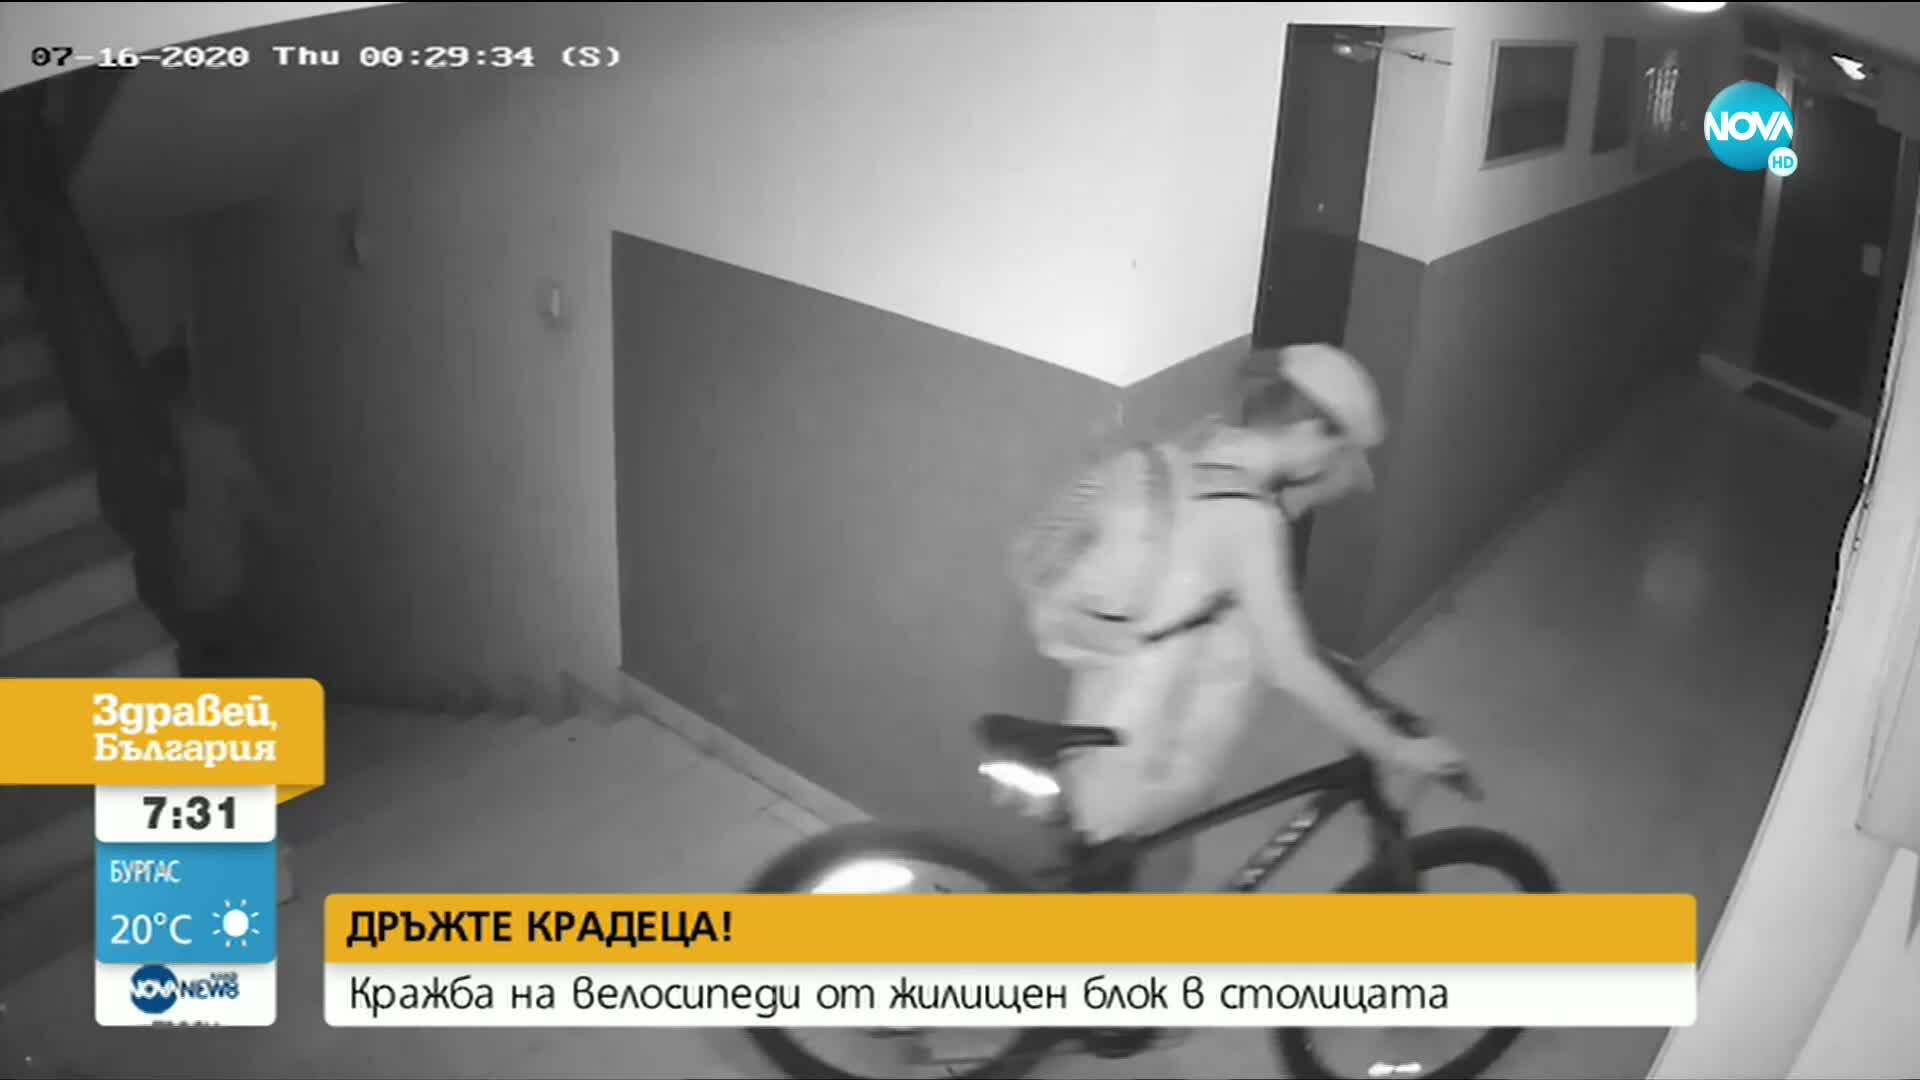 „Дръжте крадеца": Кражба на велосипеди от жилищен блок в София